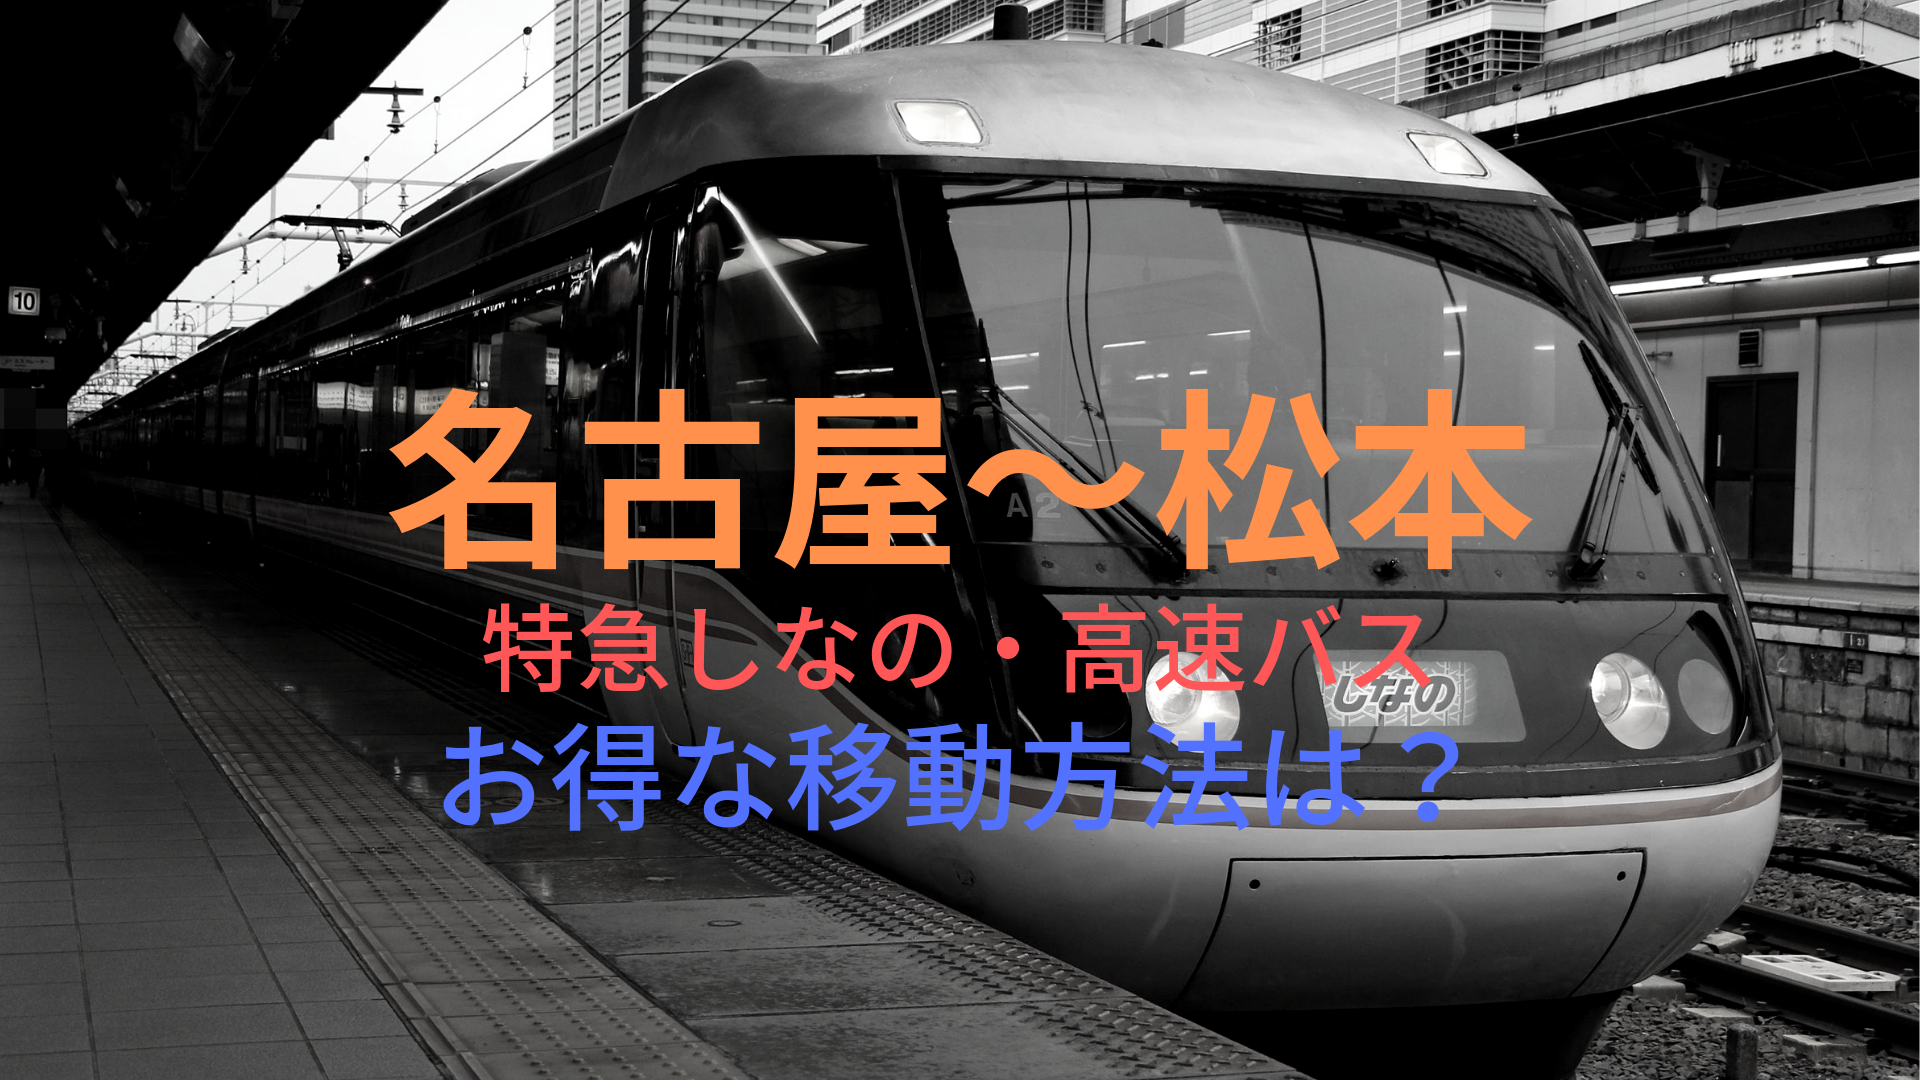 名古屋 松本 2800円 格安で移動する方法は 特急しなの 高速バスをそれぞれ比較 ばしたく交通